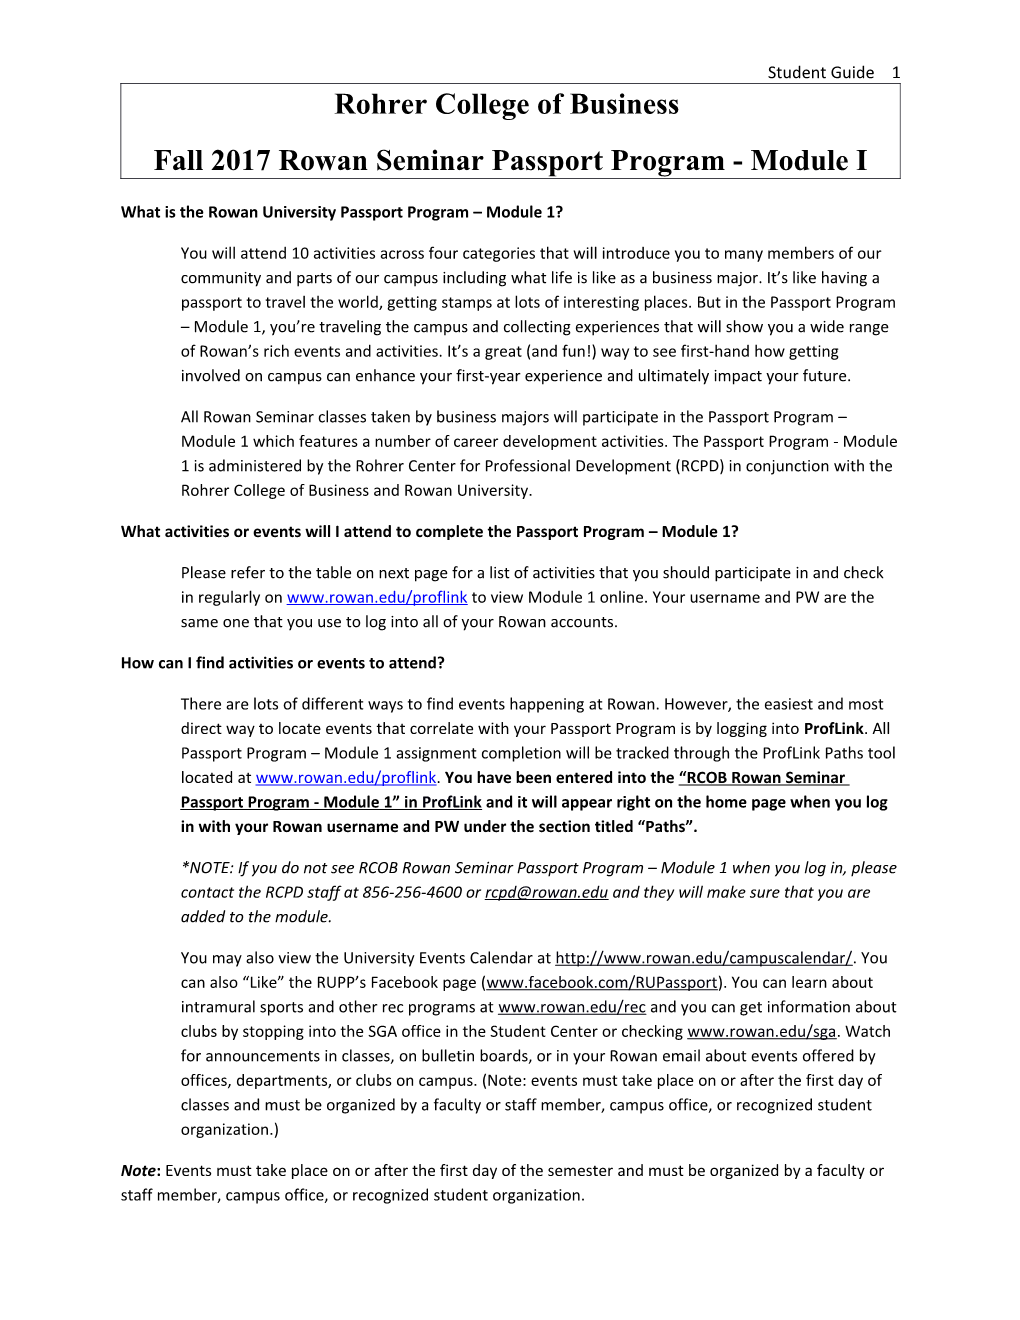 Fall 2017 Rowan Seminar Passport Program - Module I